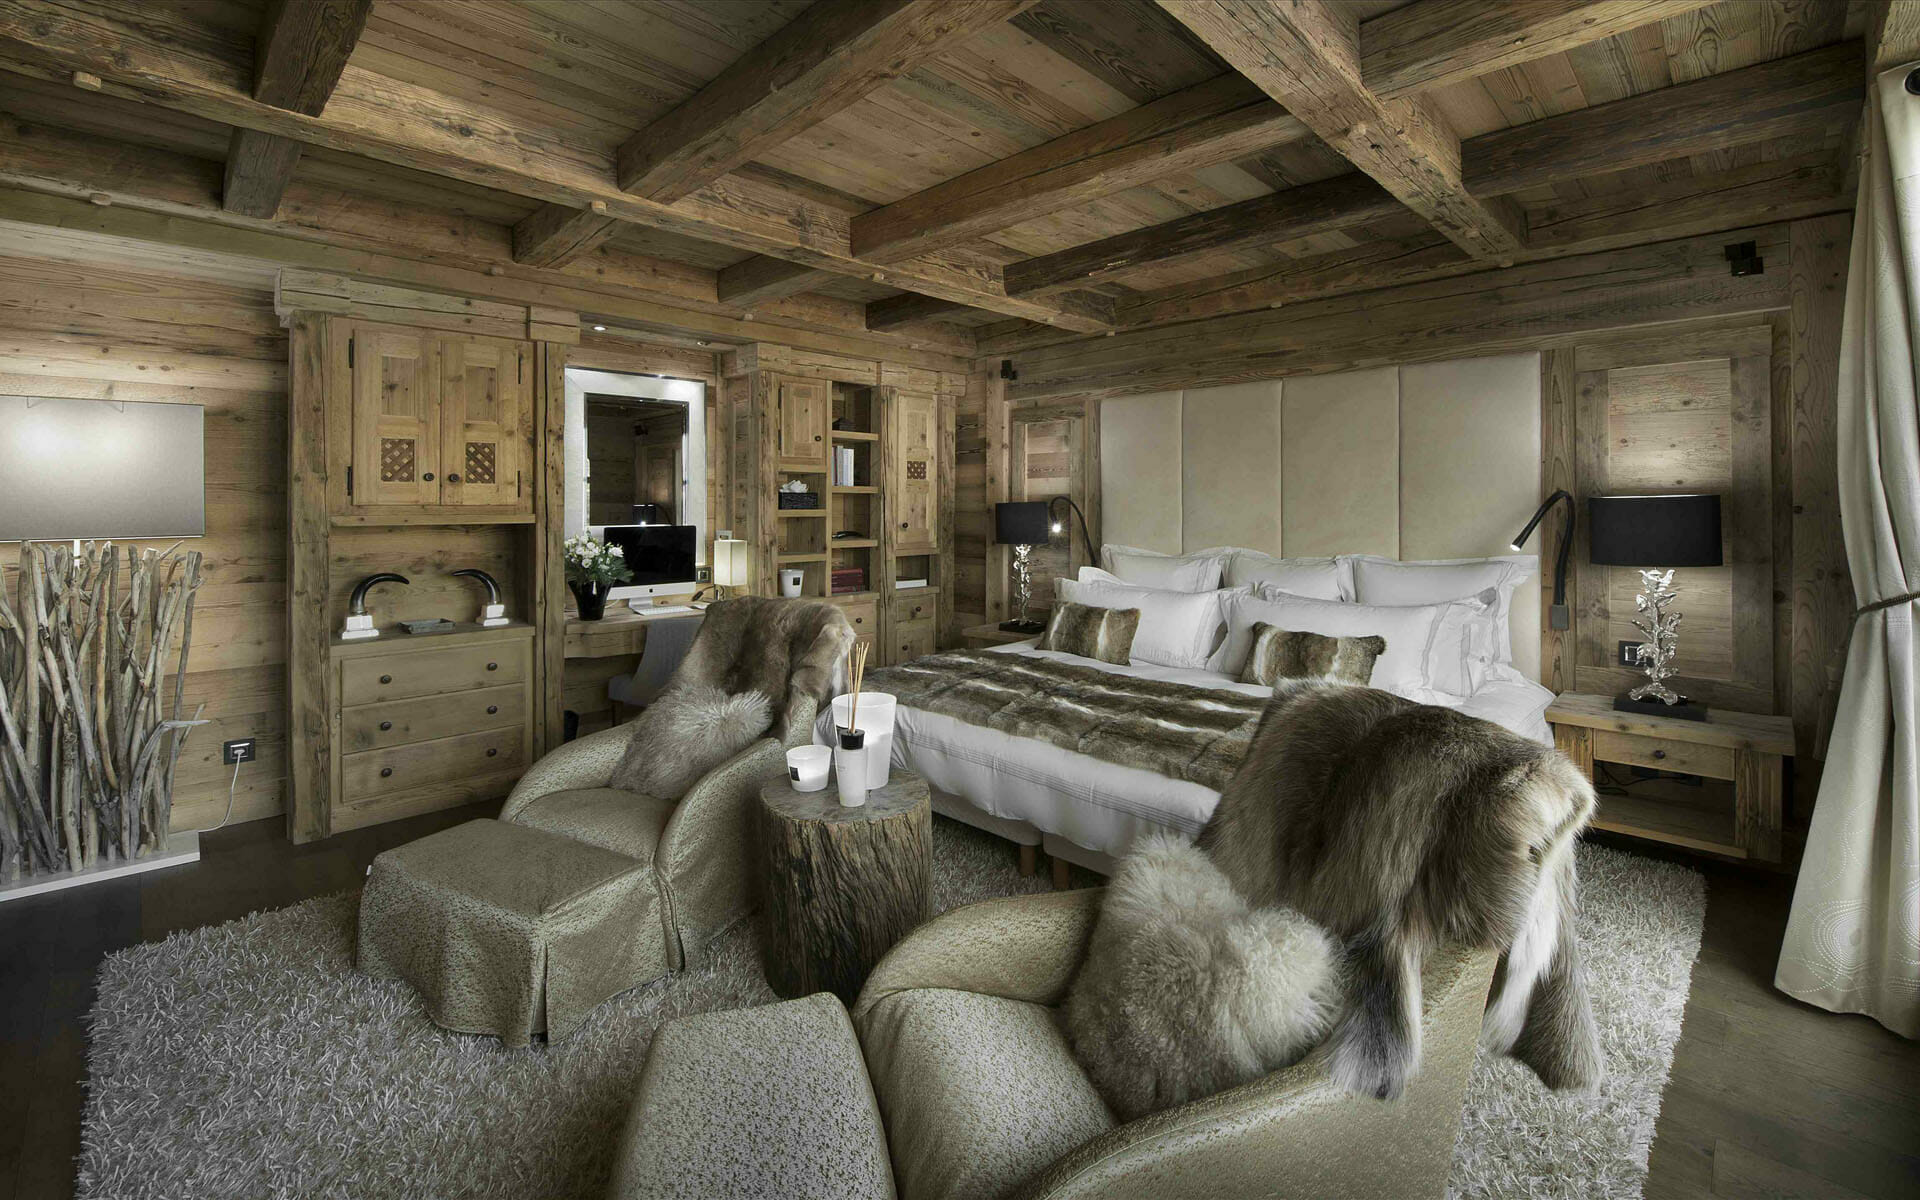 Cozy bedroom cabin interior design